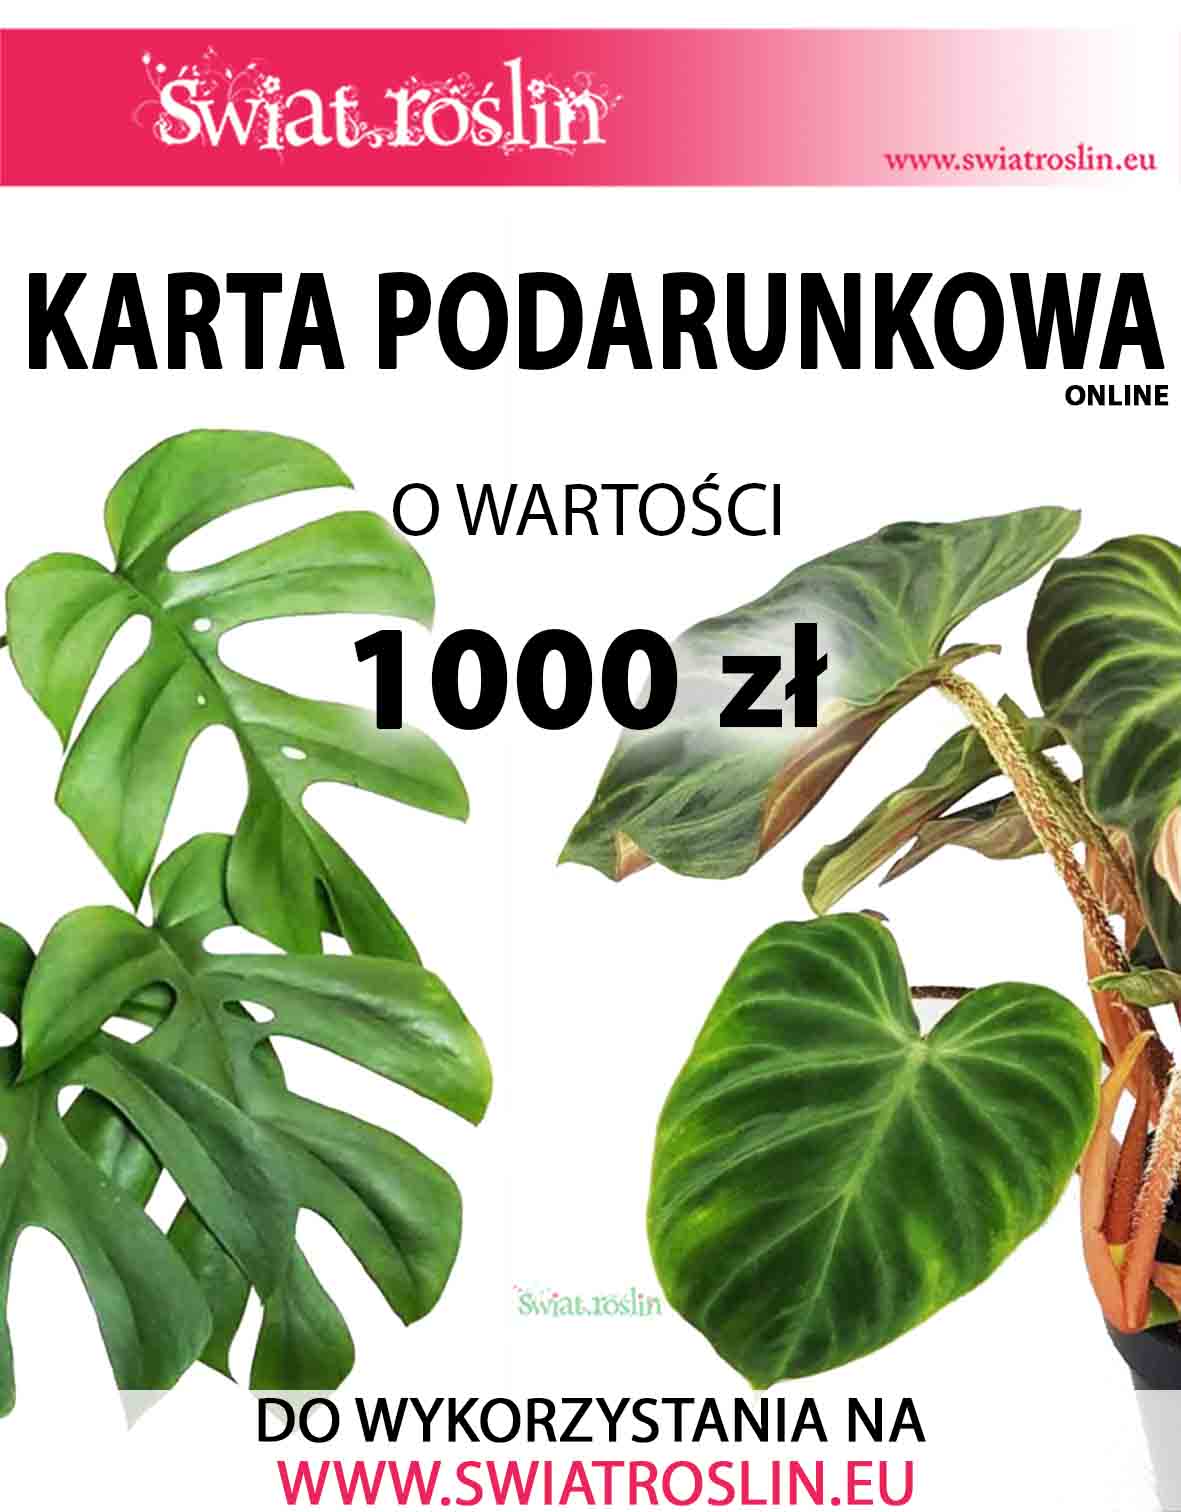 Karta podarunkowa na rośliny,  Bon na rośliny, Voucher na rośliny doniczkowe, sklep online, 1000 zł